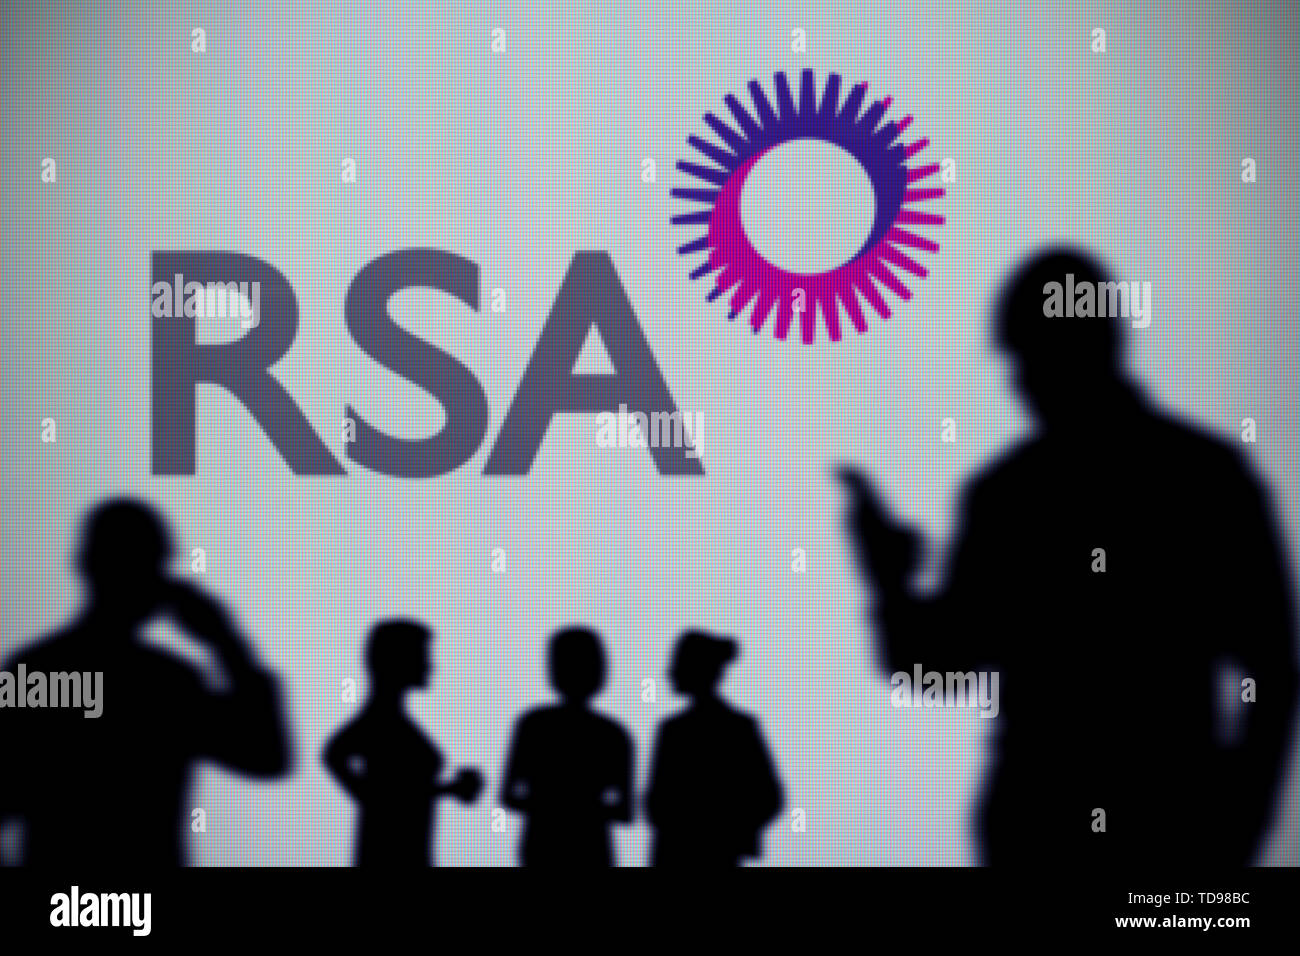 Il Royal Sun Alliance (RSA) il logo sia visibile su uno schermo a LED in background mentre si profila una persona utilizza uno smartphone (solo uso editoriale) Foto Stock